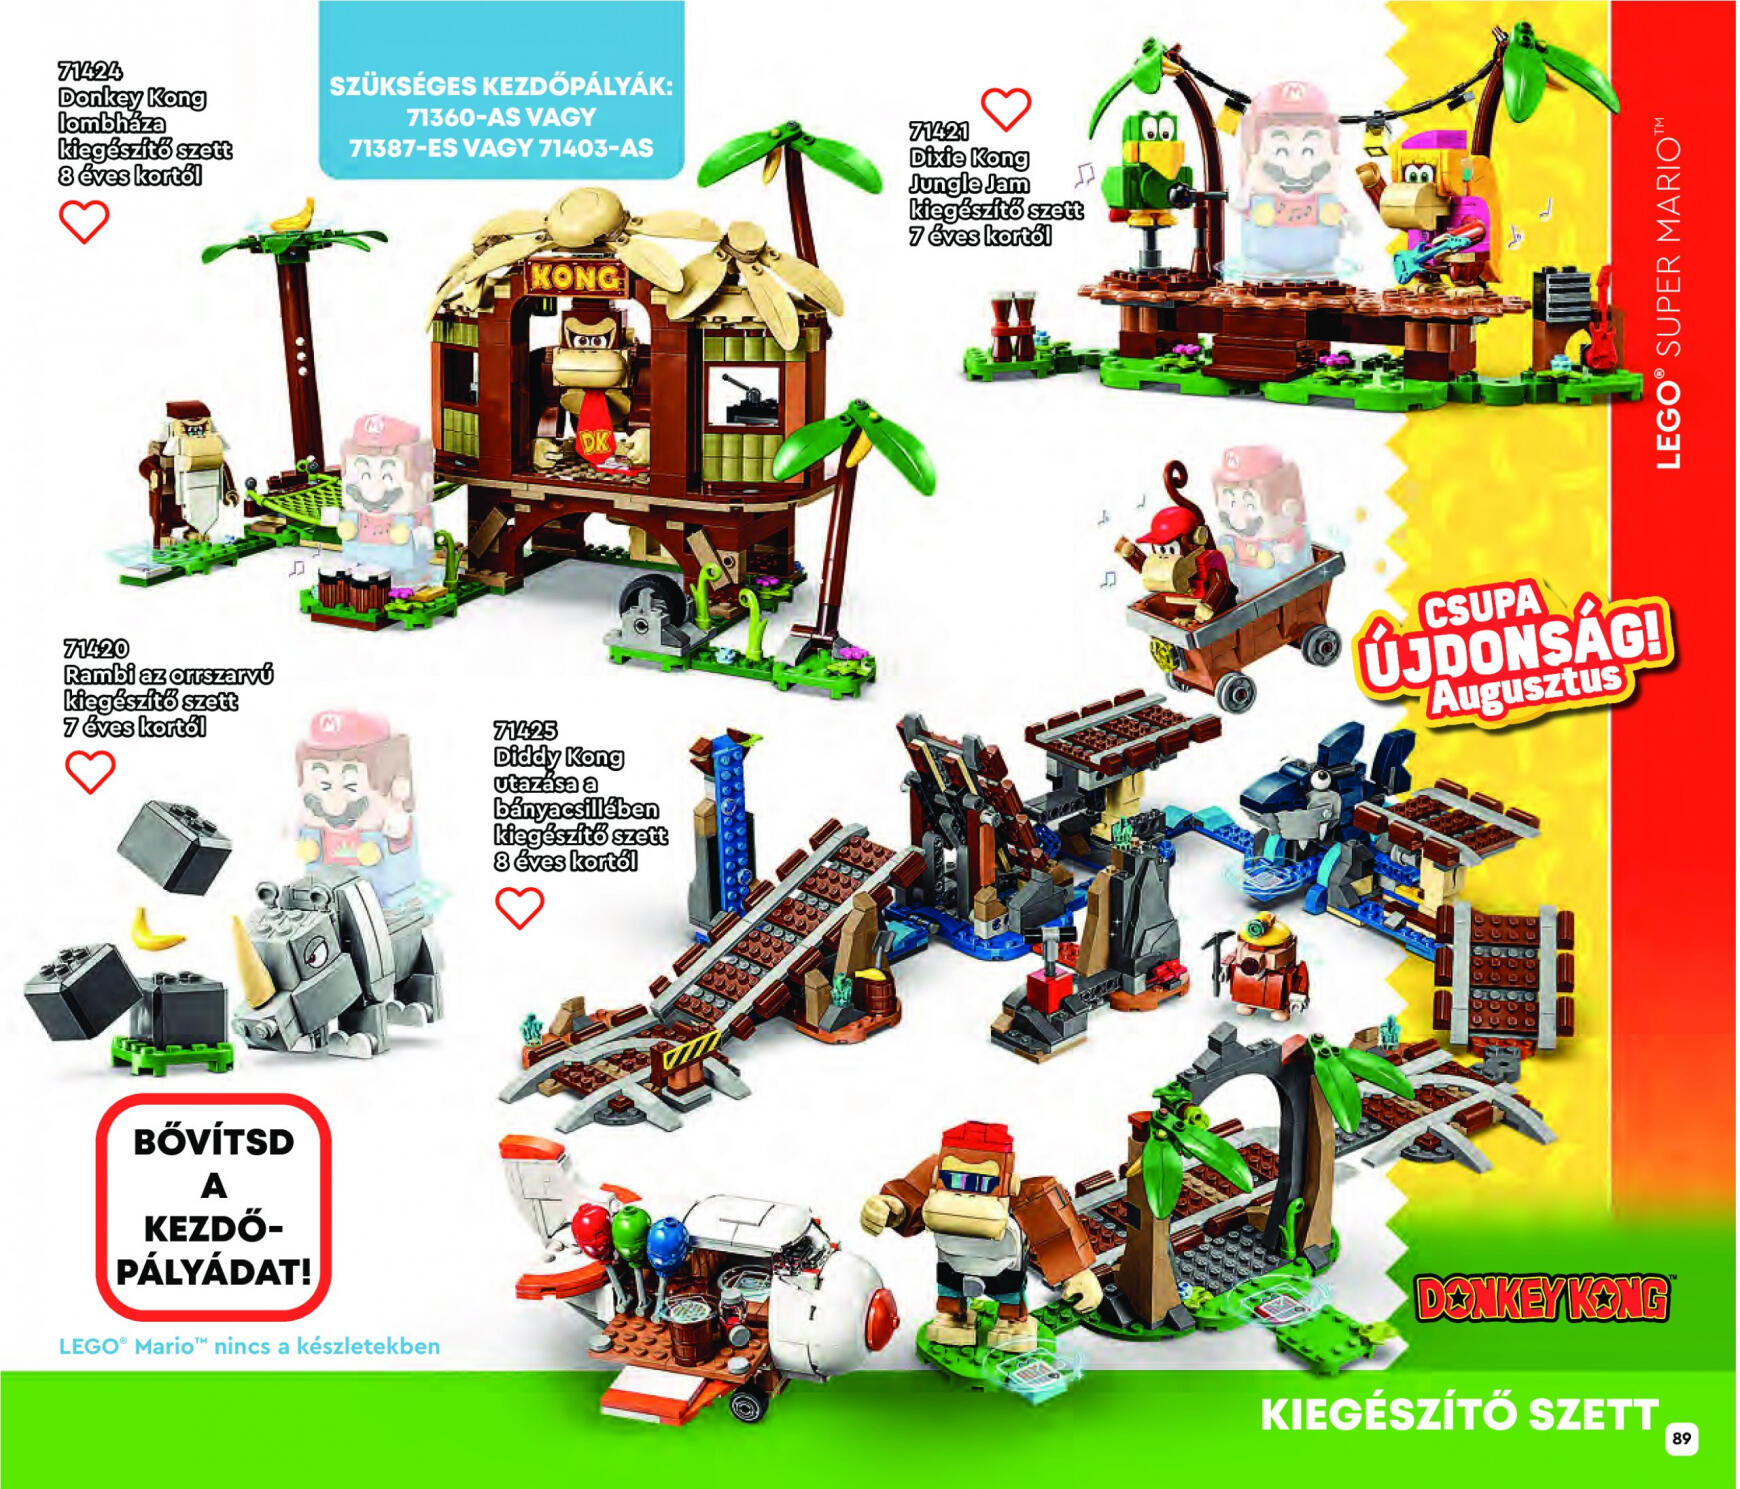 kockaaruhaz - LEGO Katalógus 2023 - page: 89